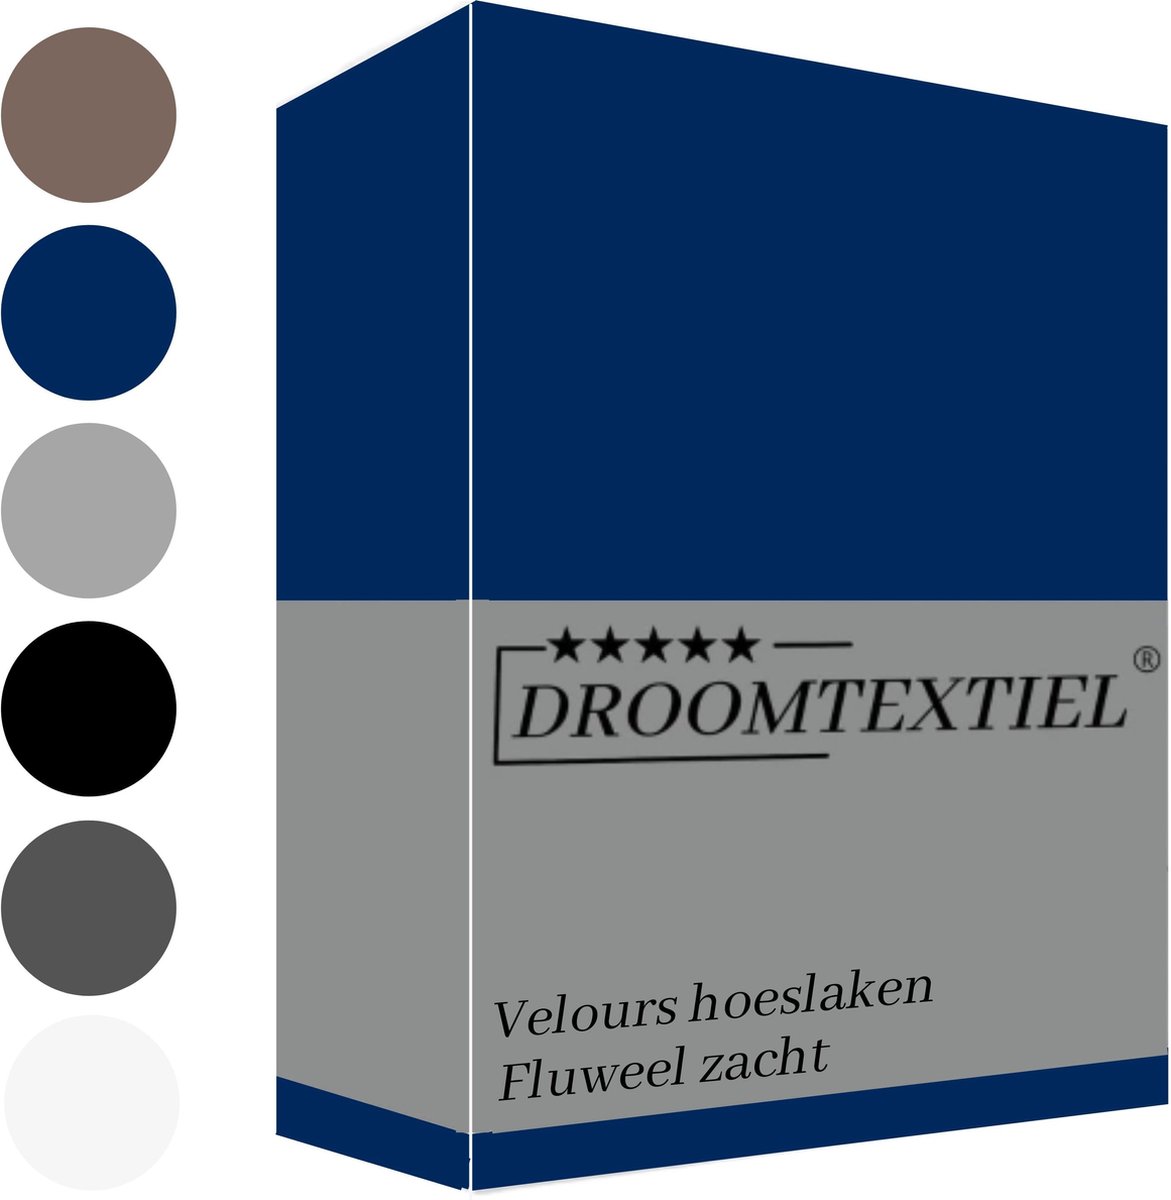 Droomtextiel Hoeslaken Velours Navy blauw ( Lits-Jumeaux 180x200/210/220 cm ) 220 g/m2 Excellente Kwaliteit - Fluweel Zacht - 35 cm Hoekhoogte - Rondom Elastiek -